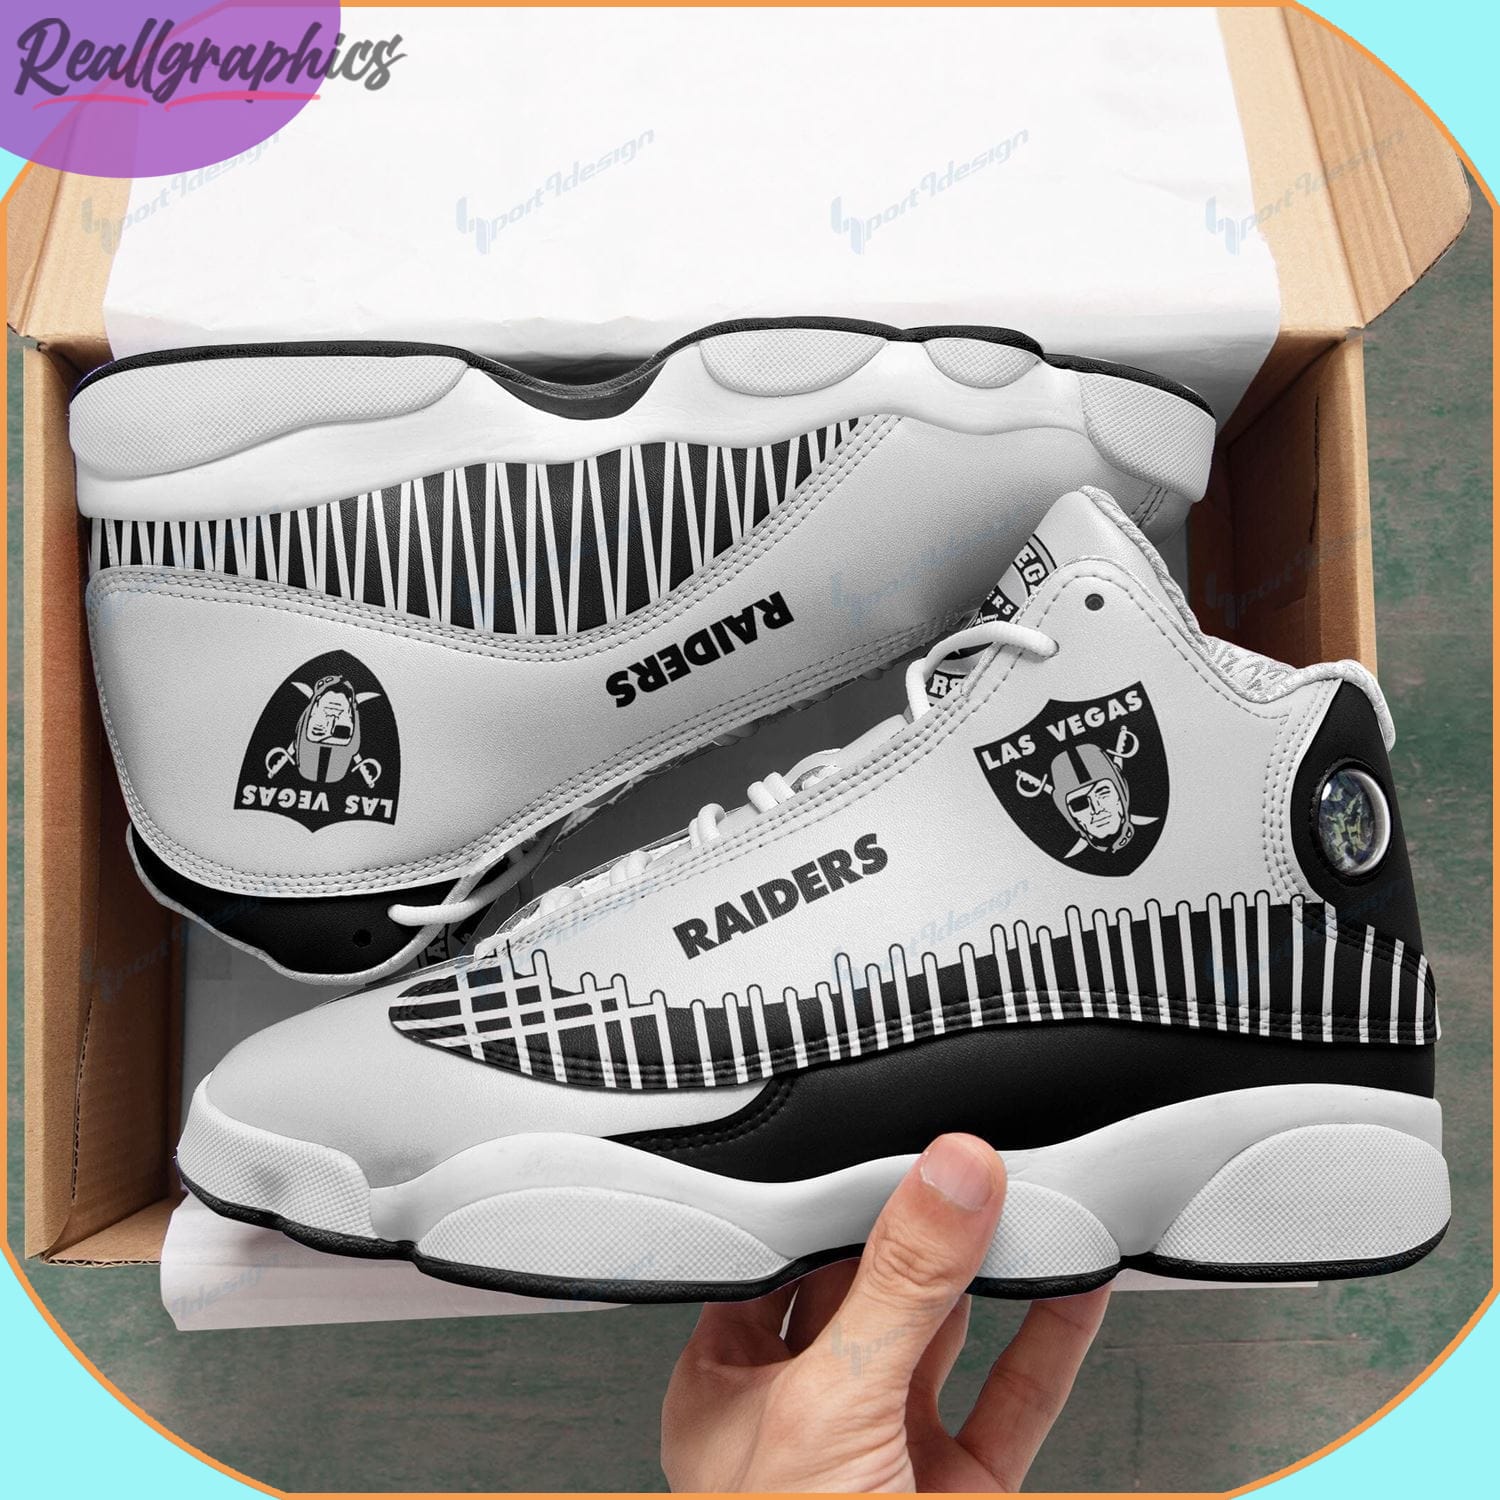 Las Vegas Raiders Air Jordan 13 Sneakers - Reallgraphics